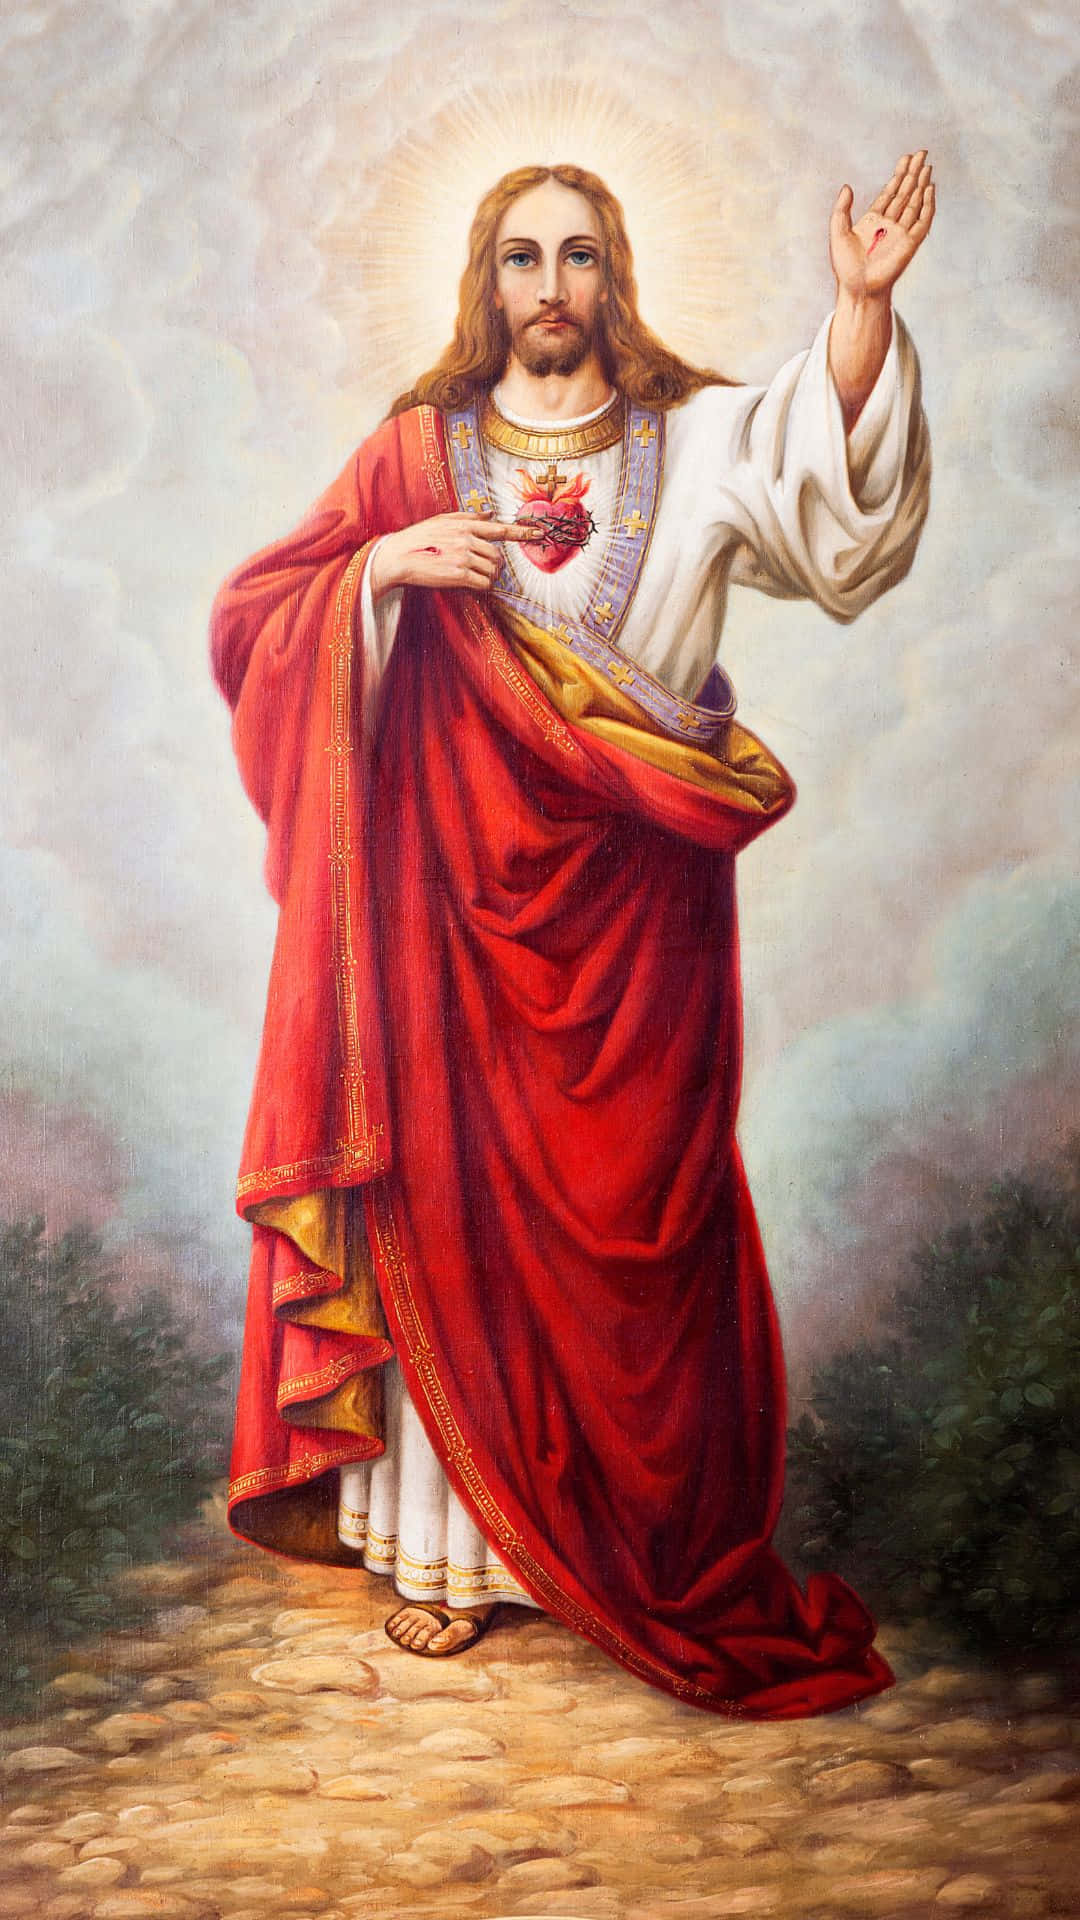 Portrait Of The Merciful Jesus in Heaven Wallpaper